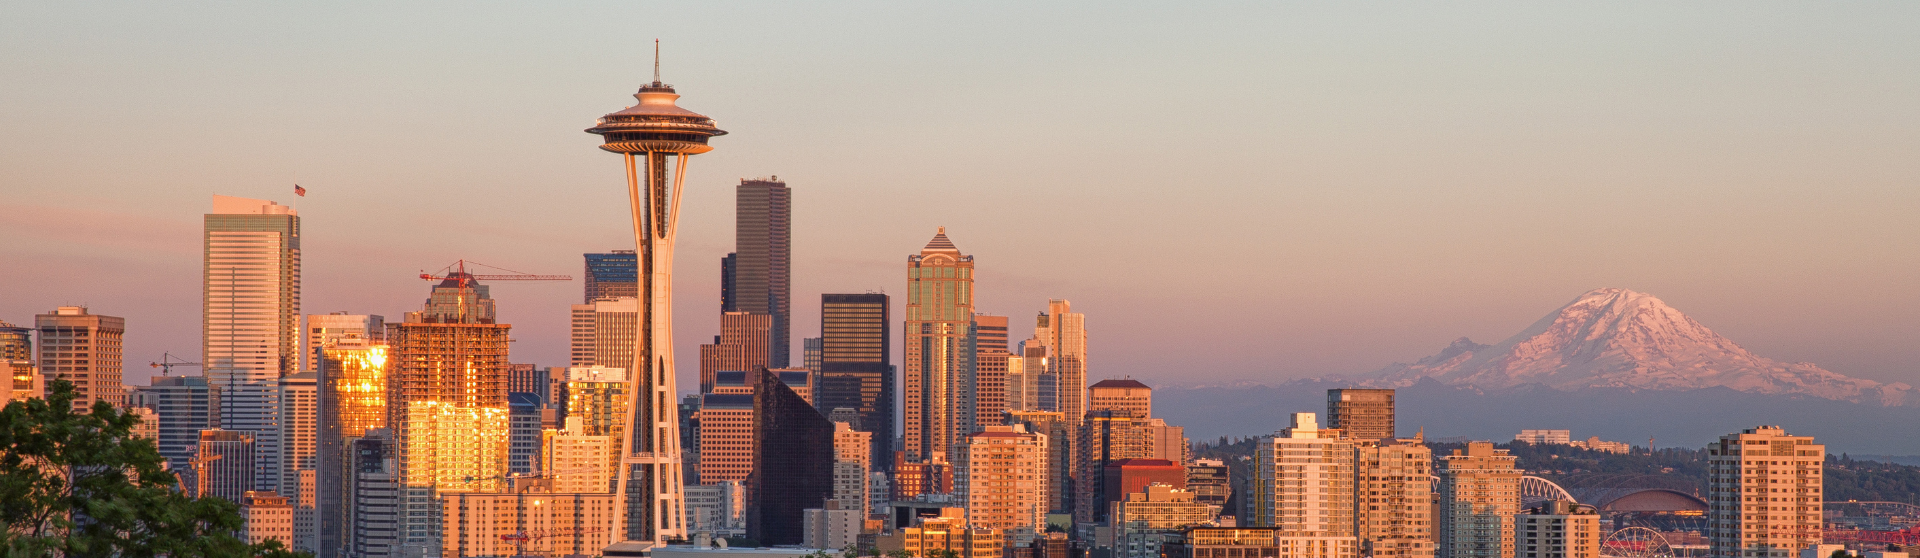 Seattle skyline at sunset 